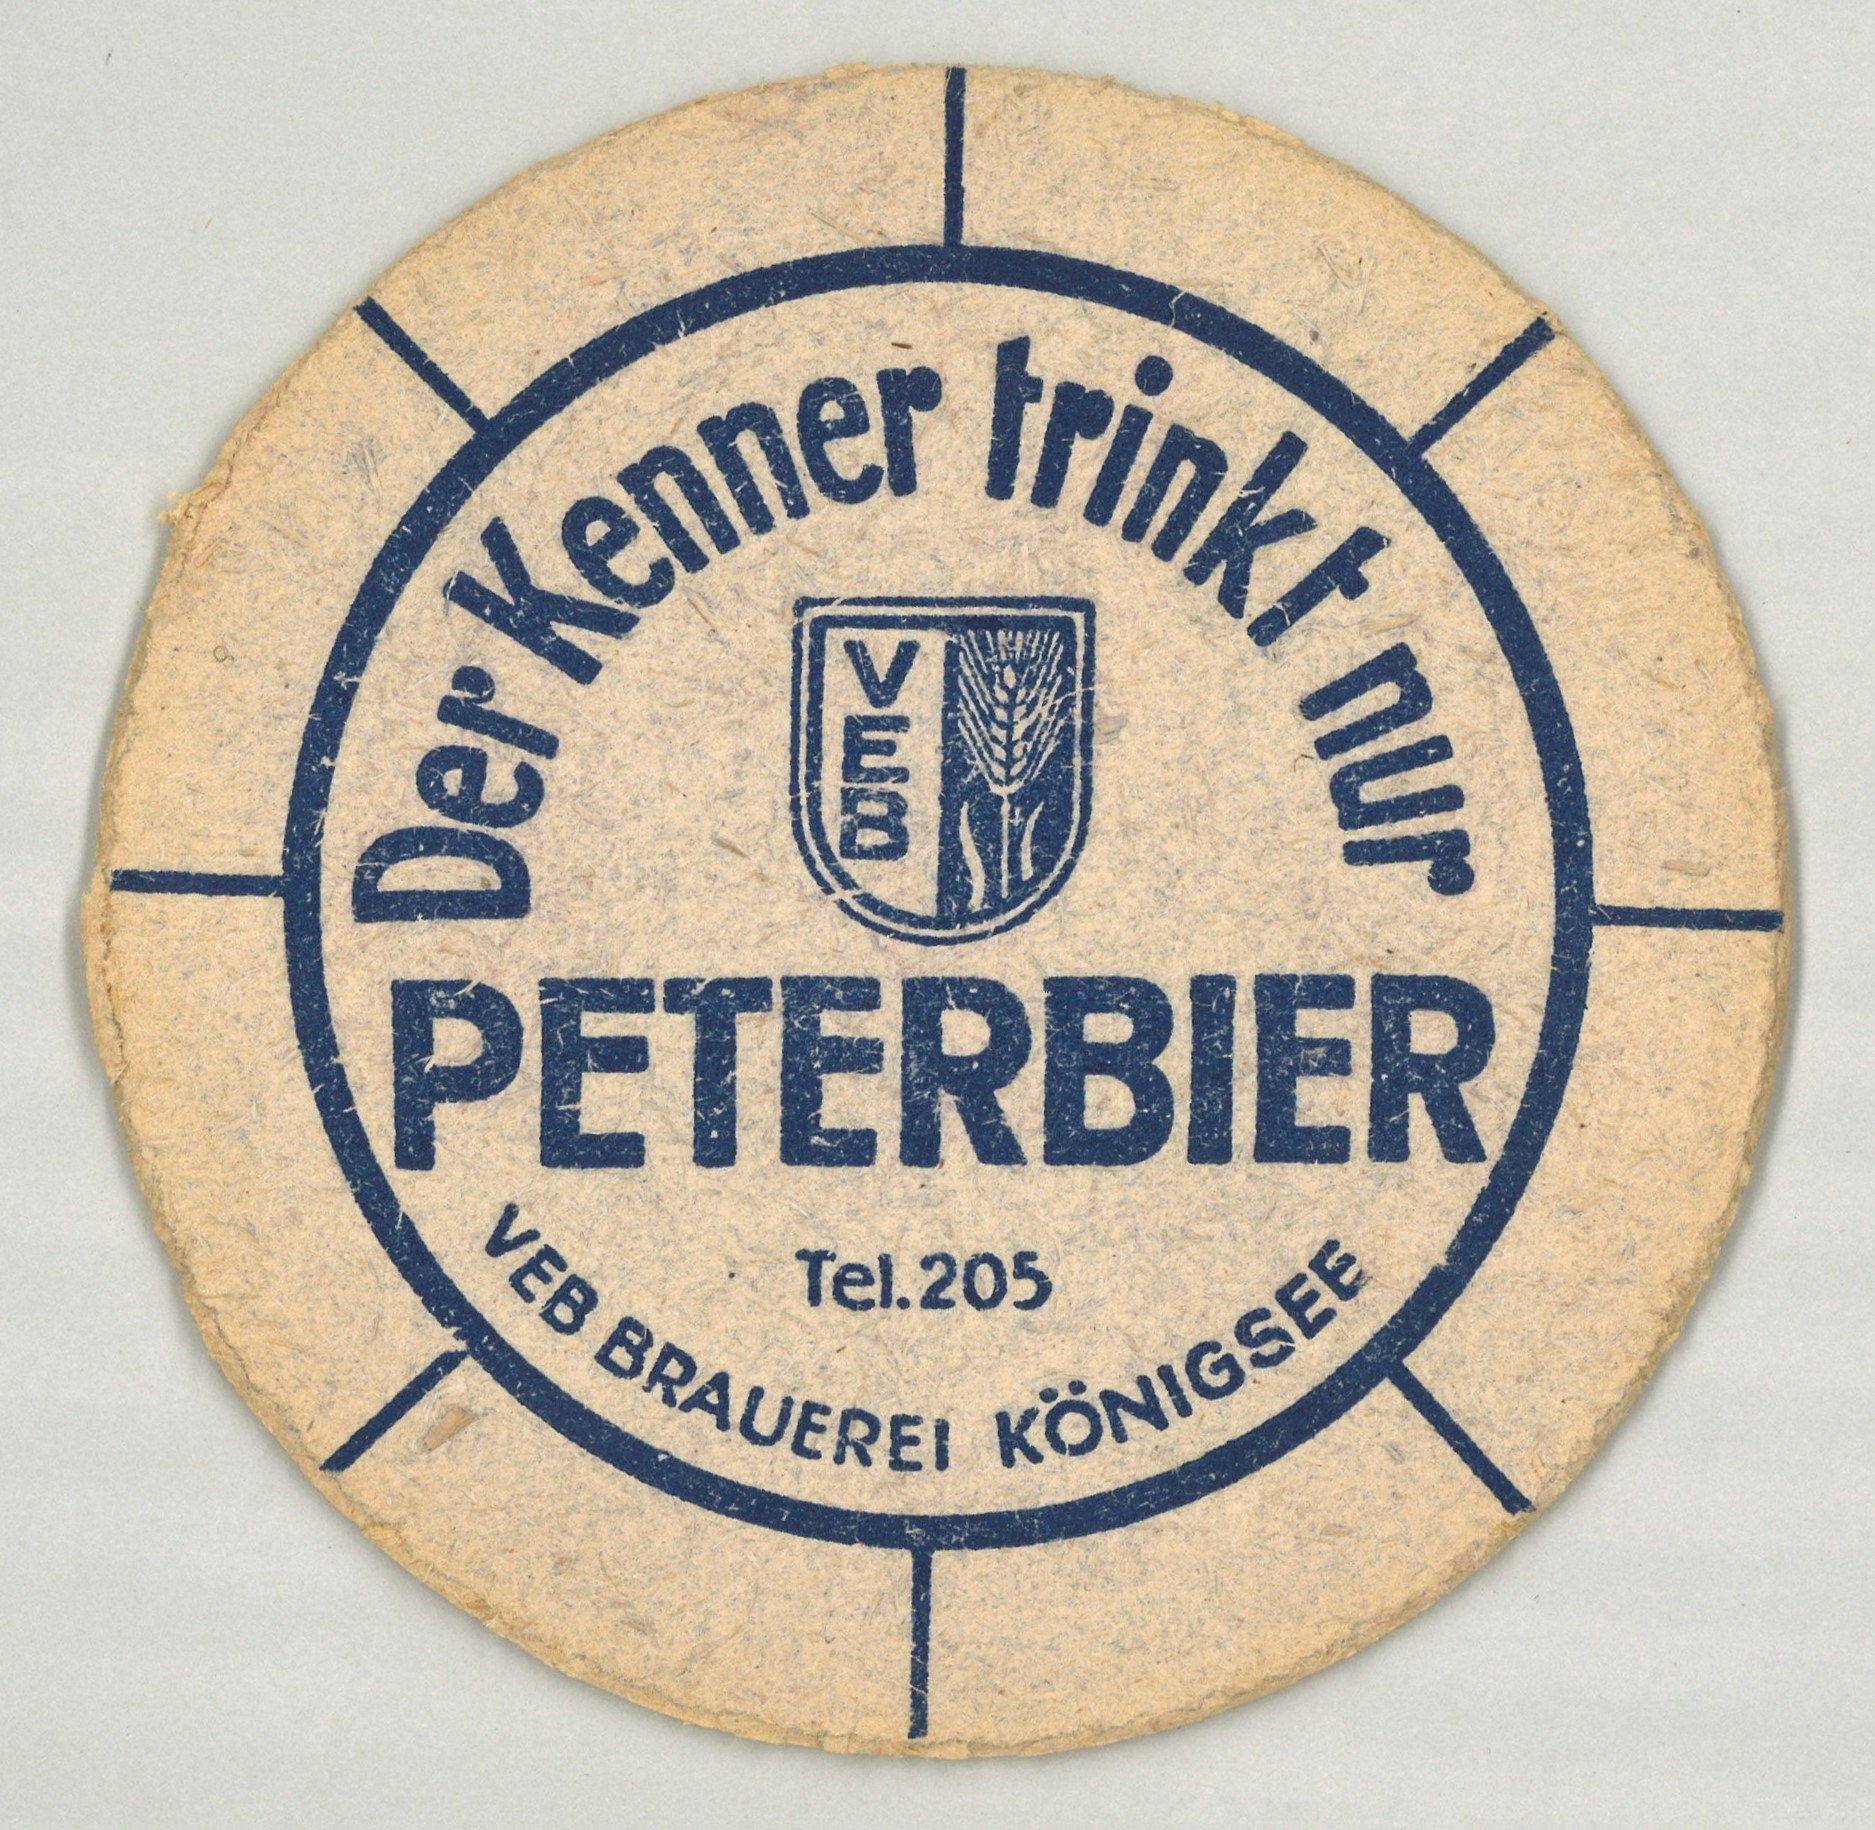 Königsee (Thüringen): VEB Brauerei Königsee (Landesgeschichtliche Vereinigung für die Mark Brandenburg e.V., Archiv CC BY)